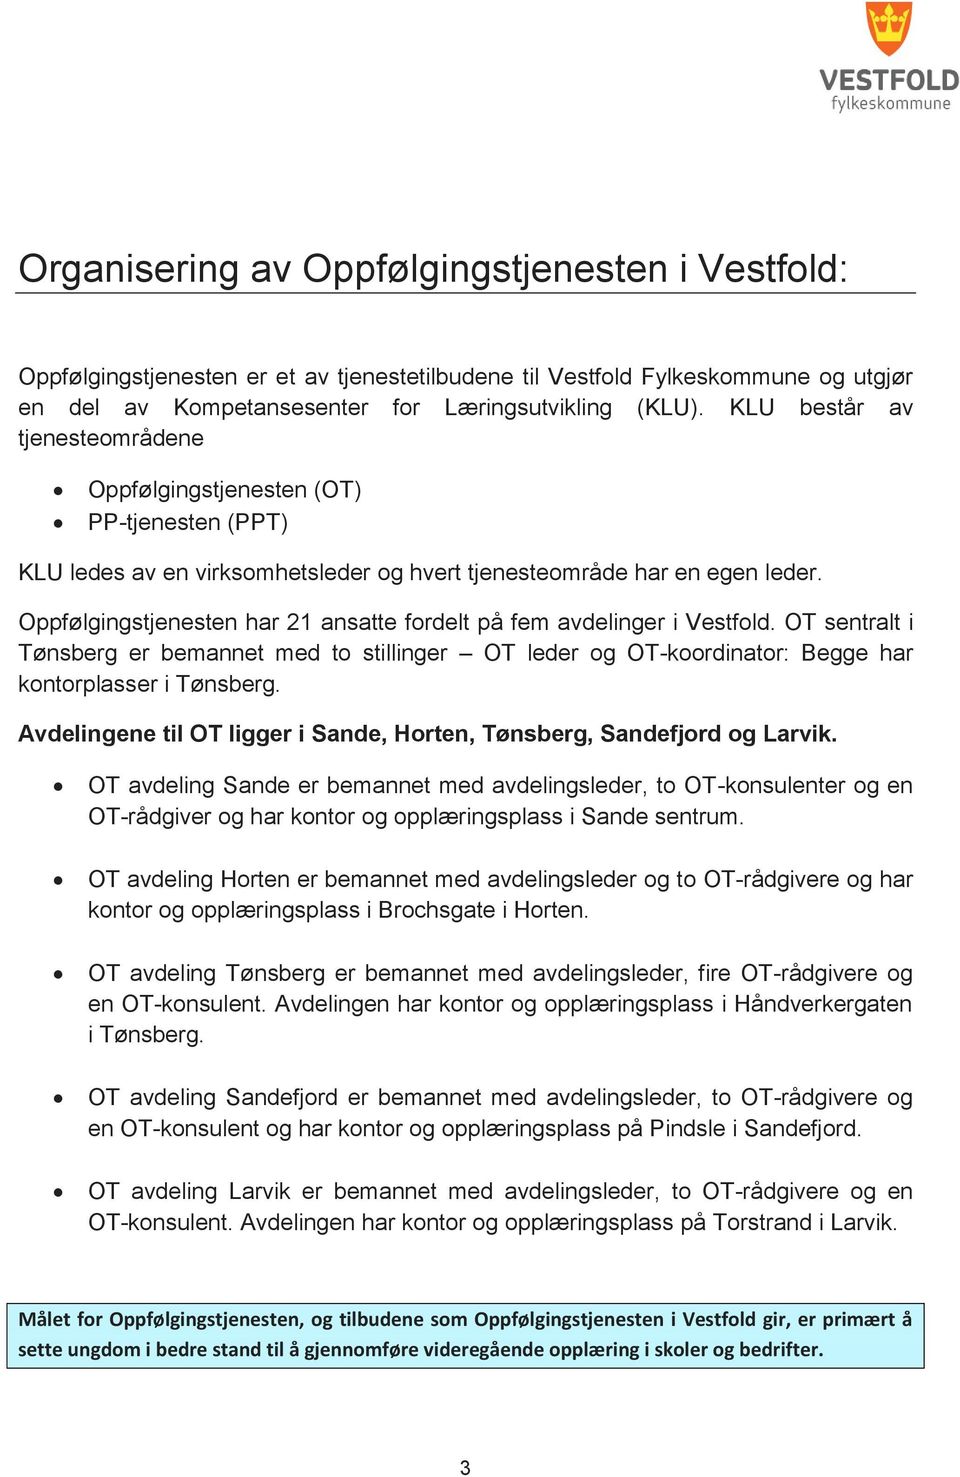 Oppfølgingstjenesten har 21 ansatte fordelt på fem avdelinger i Vestfold. OT sentralt i Tønsberg er bemannet med to stillinger OT leder og OT-koordinator: Begge har kontorplasser i Tønsberg.